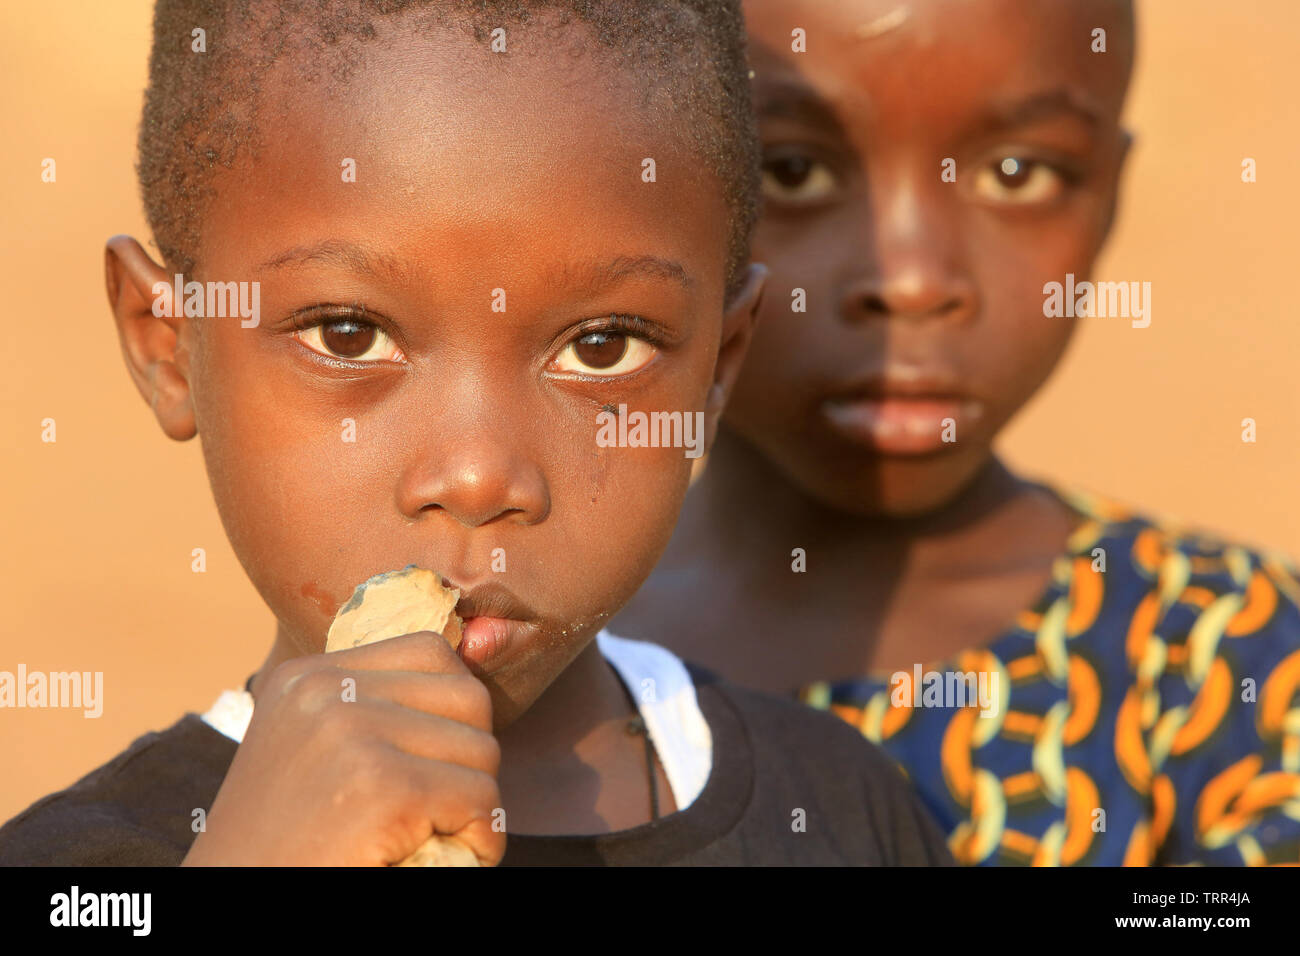 Ritratti d'enfants togolais. Atakpamé. Il Togo. Afrique de l'Ouest. Foto Stock